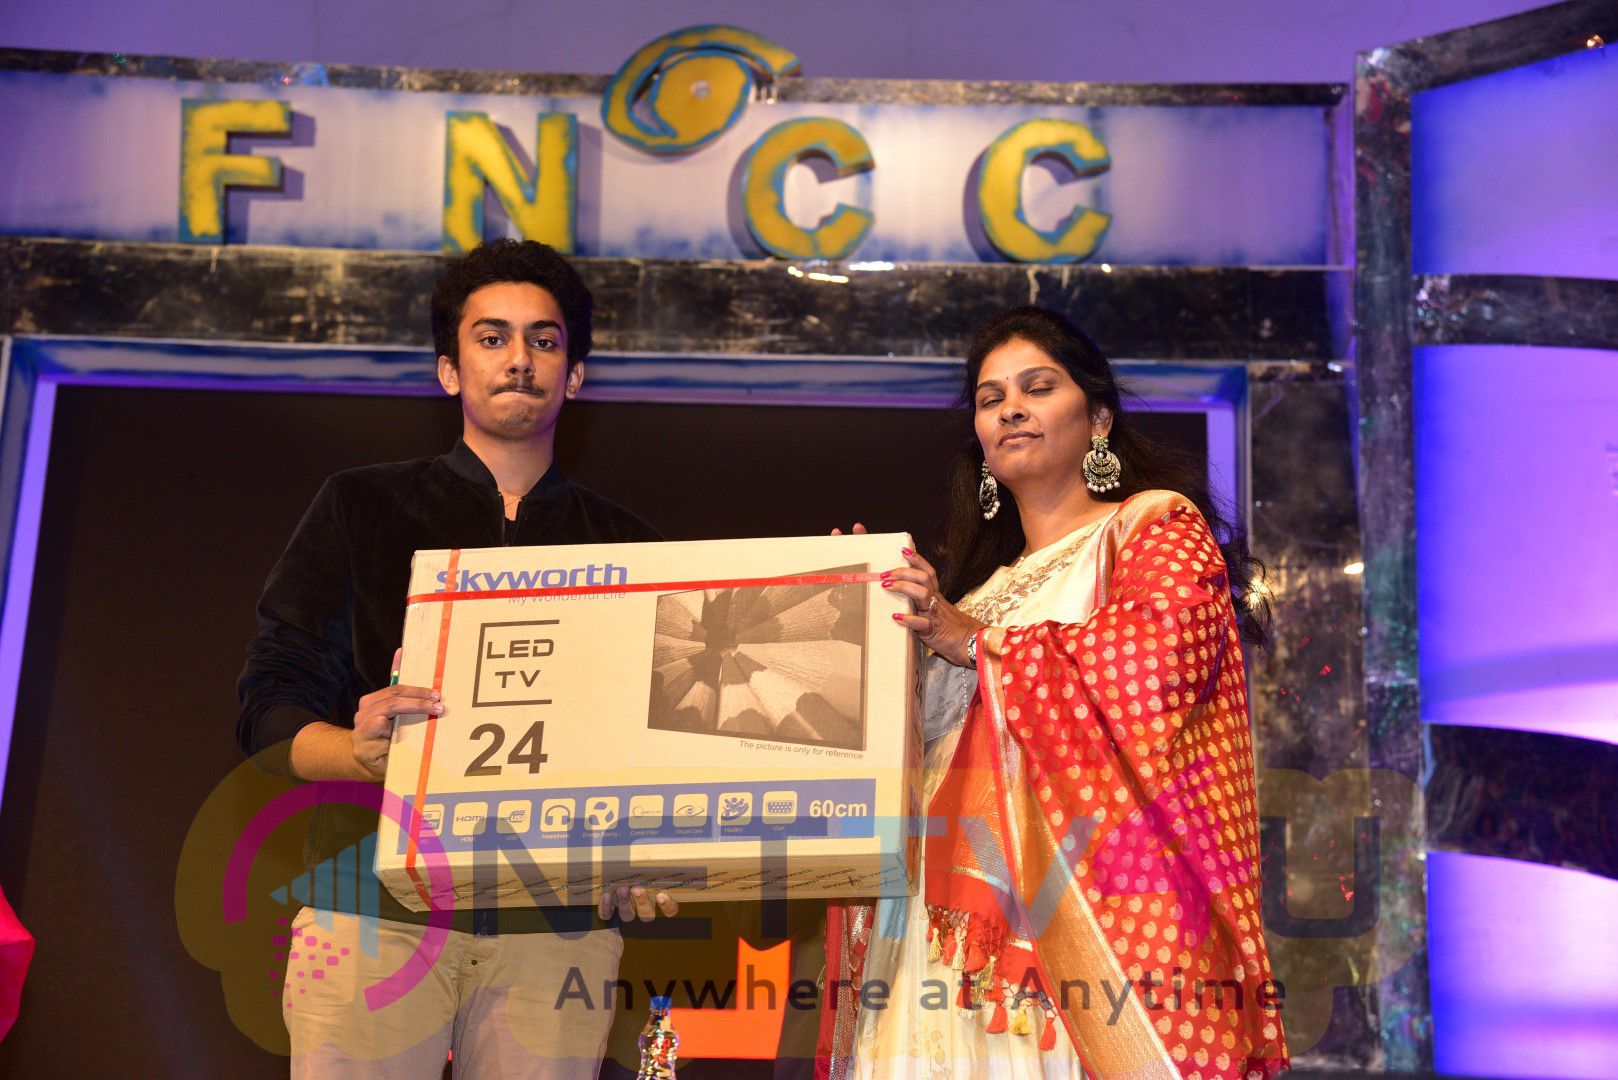 FNCC Club New Year Celebrations 2017 Photos Telugu Gallery